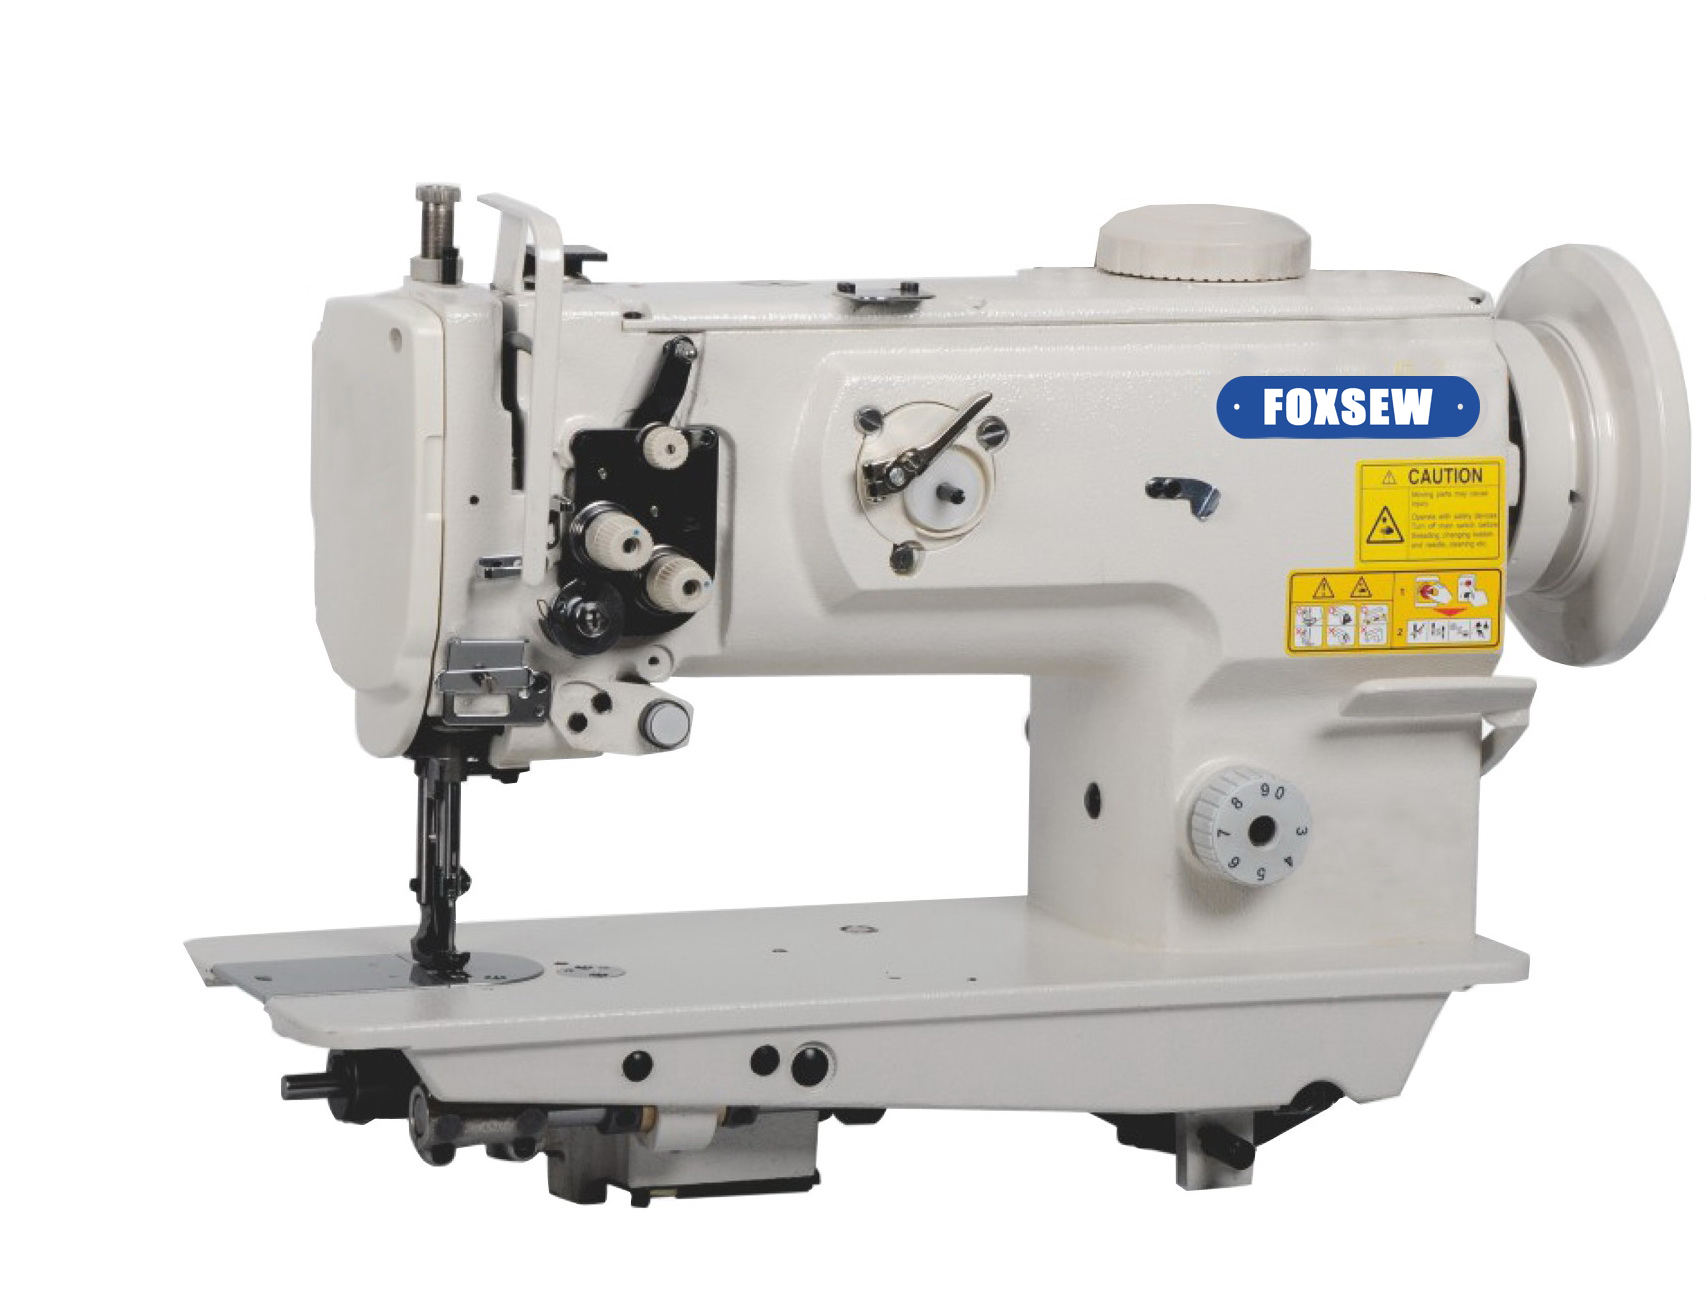 KD-1541S Single Needle Unison Feed Walking Foot Heavy Duty Lockstitch Sewing Machine